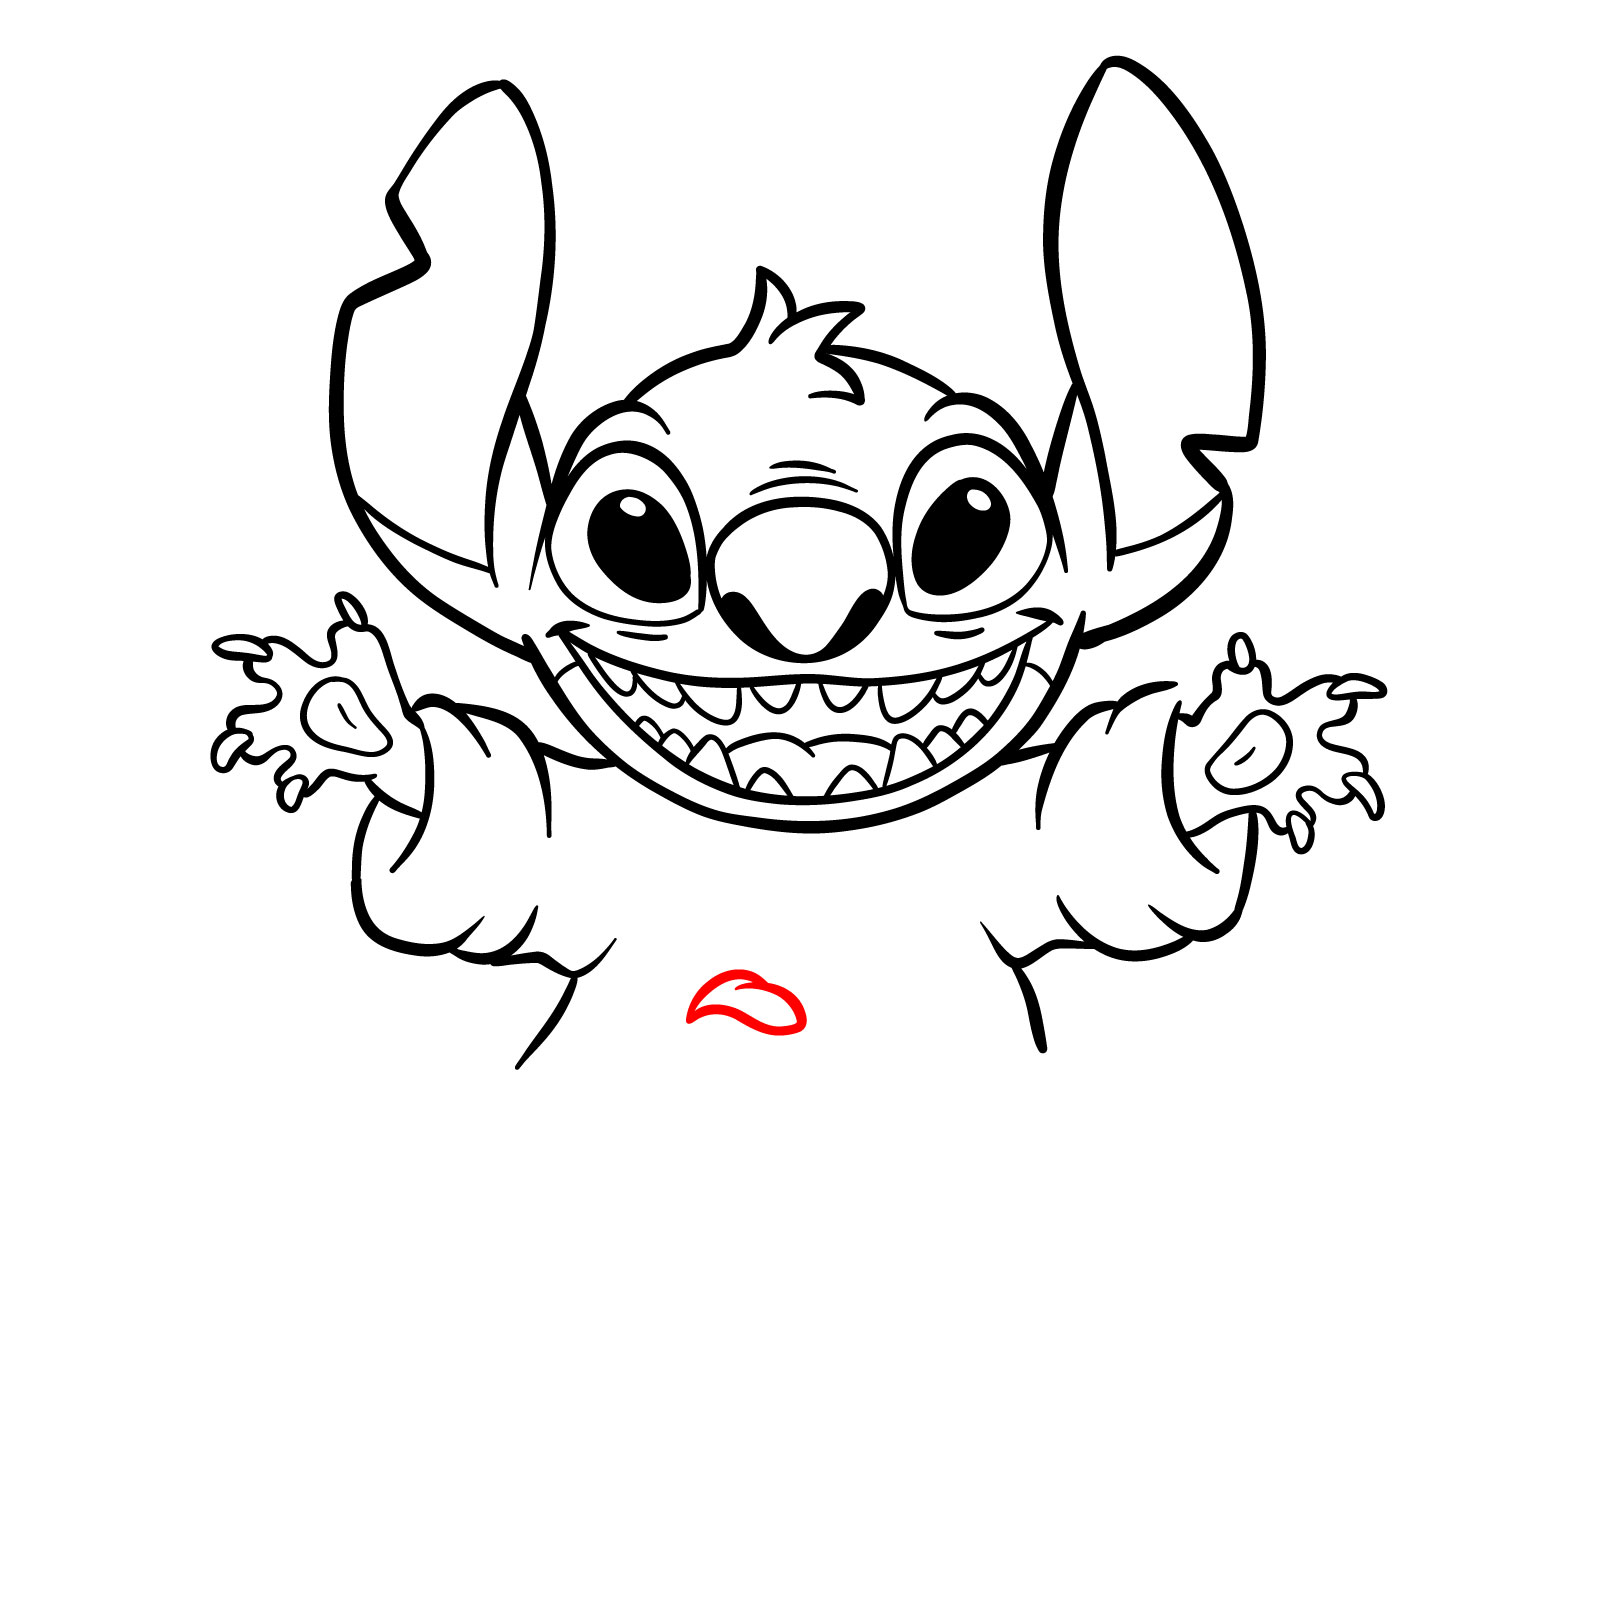 How to Draw Halloween Stitch with a jack-o'-lantern - step 21